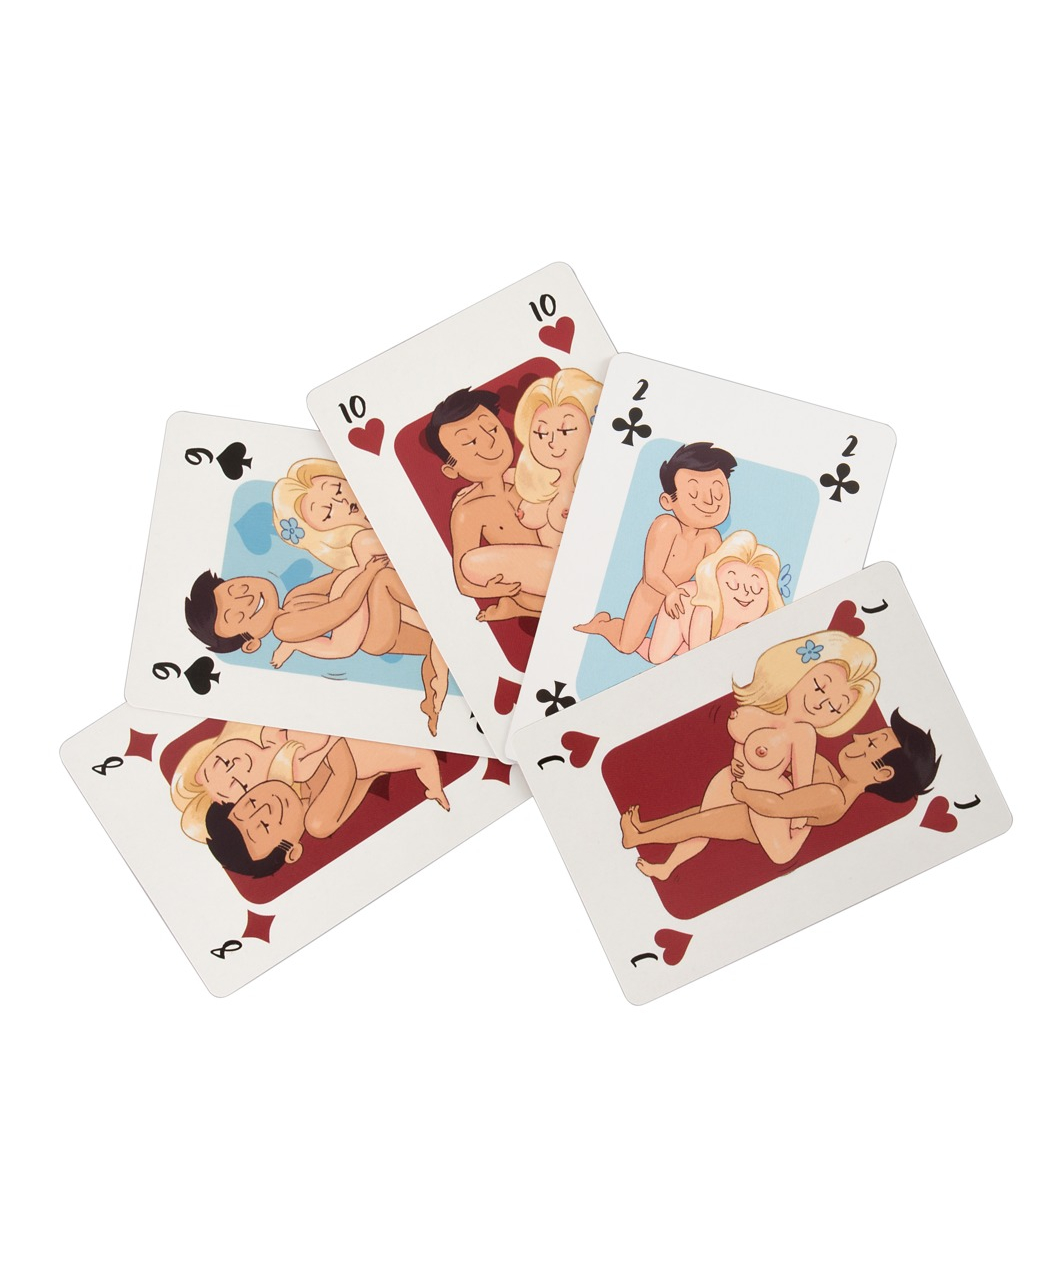 OV игральные карты с эротическими рисунками